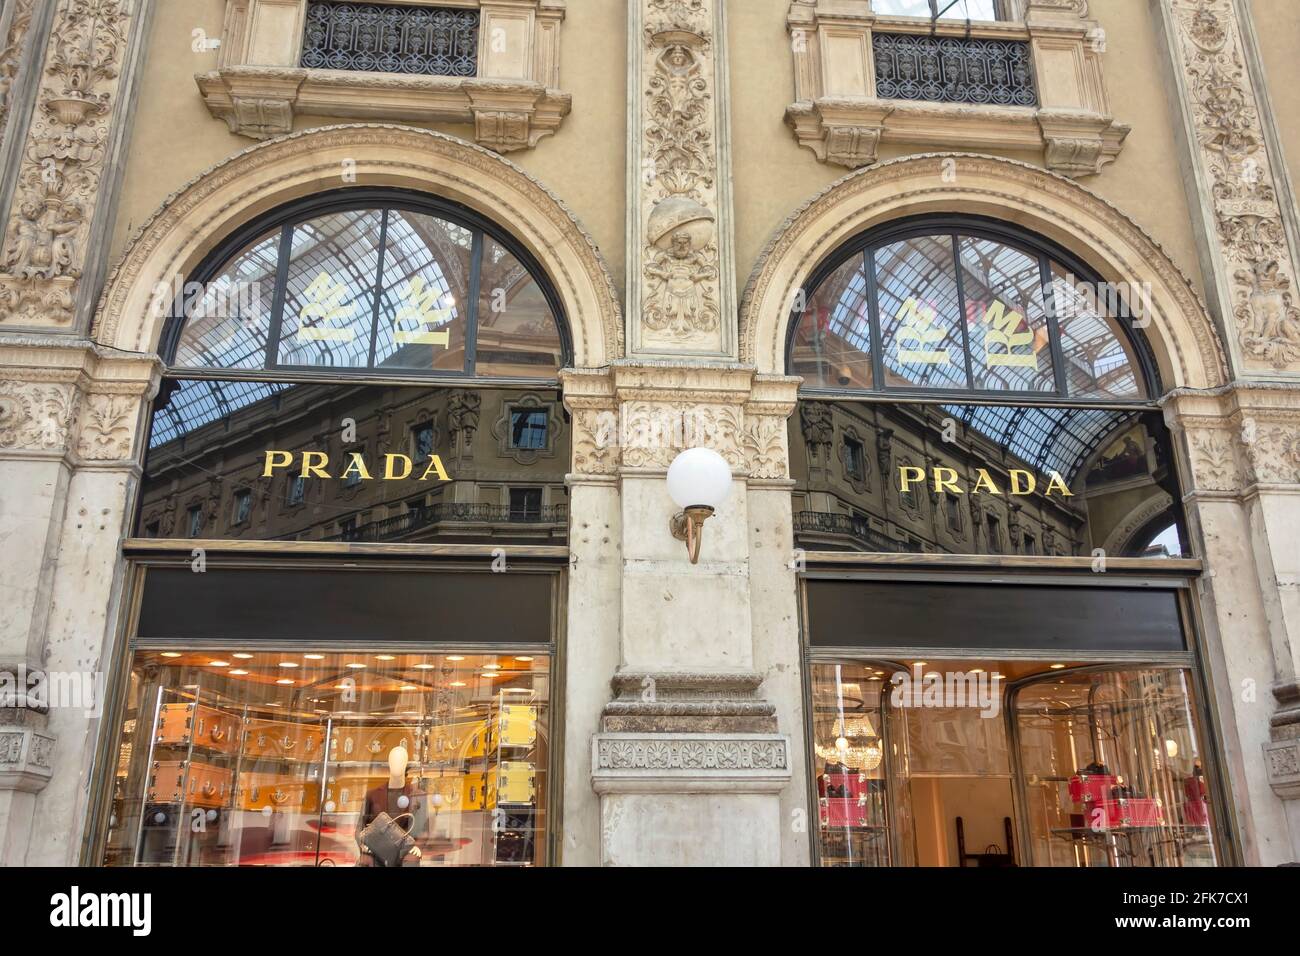 Milano - 16 settembre 2015: Cartello negozio Prada. Prada è una lussuosa casa di moda italiana. Foto Stock